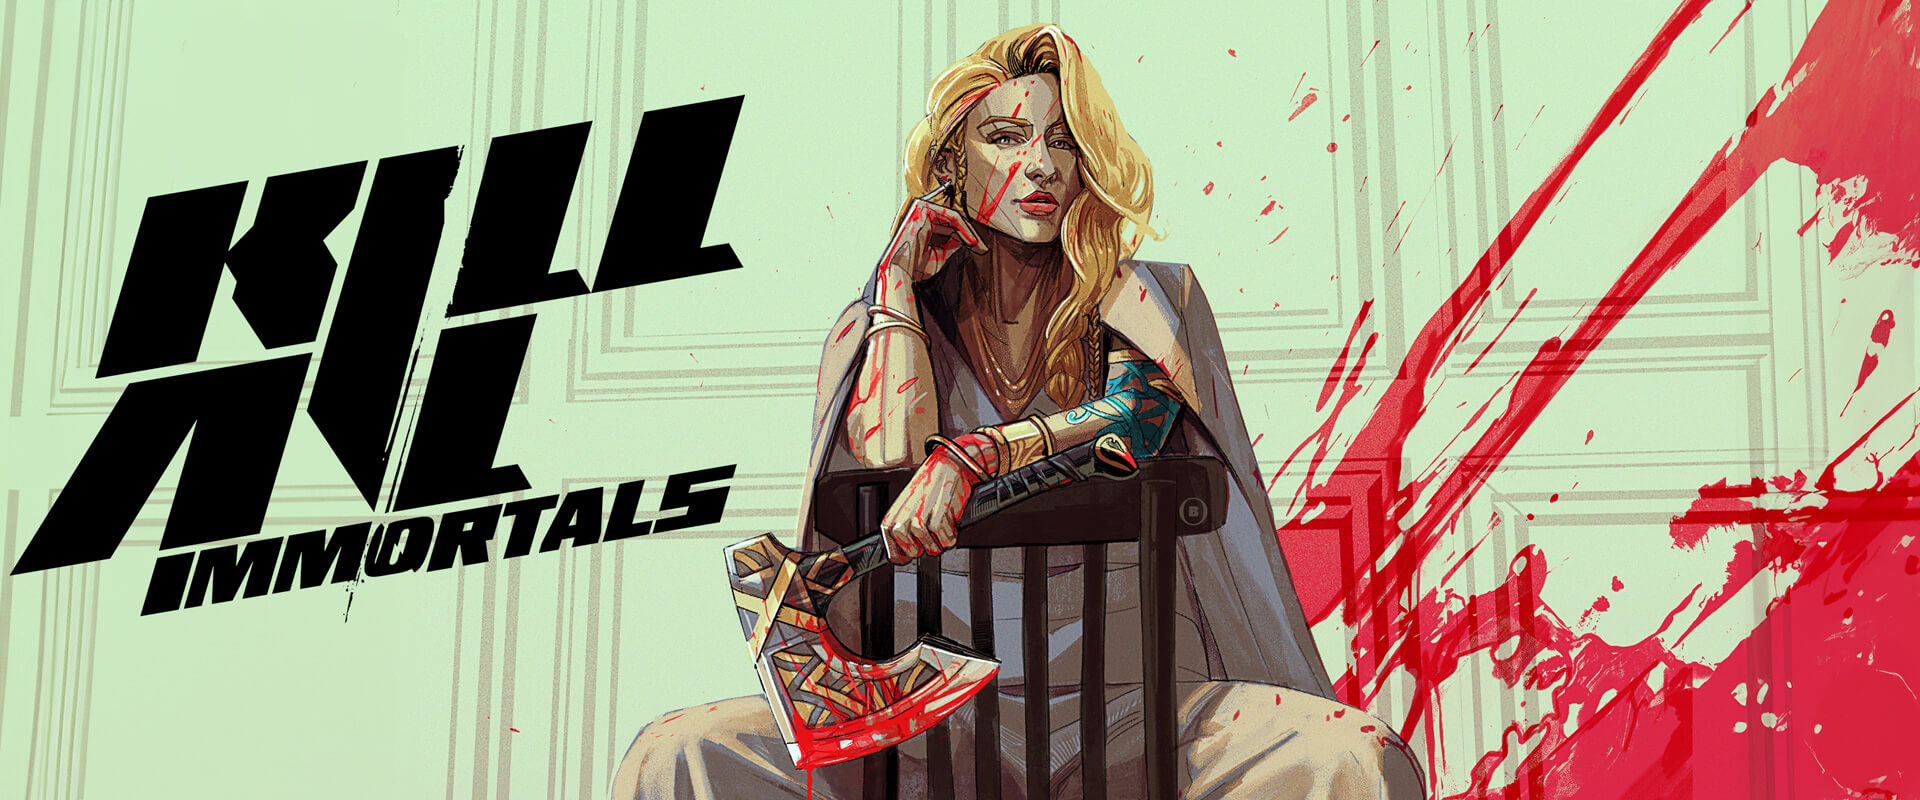 Kill all immortals  - Zack Kaplan